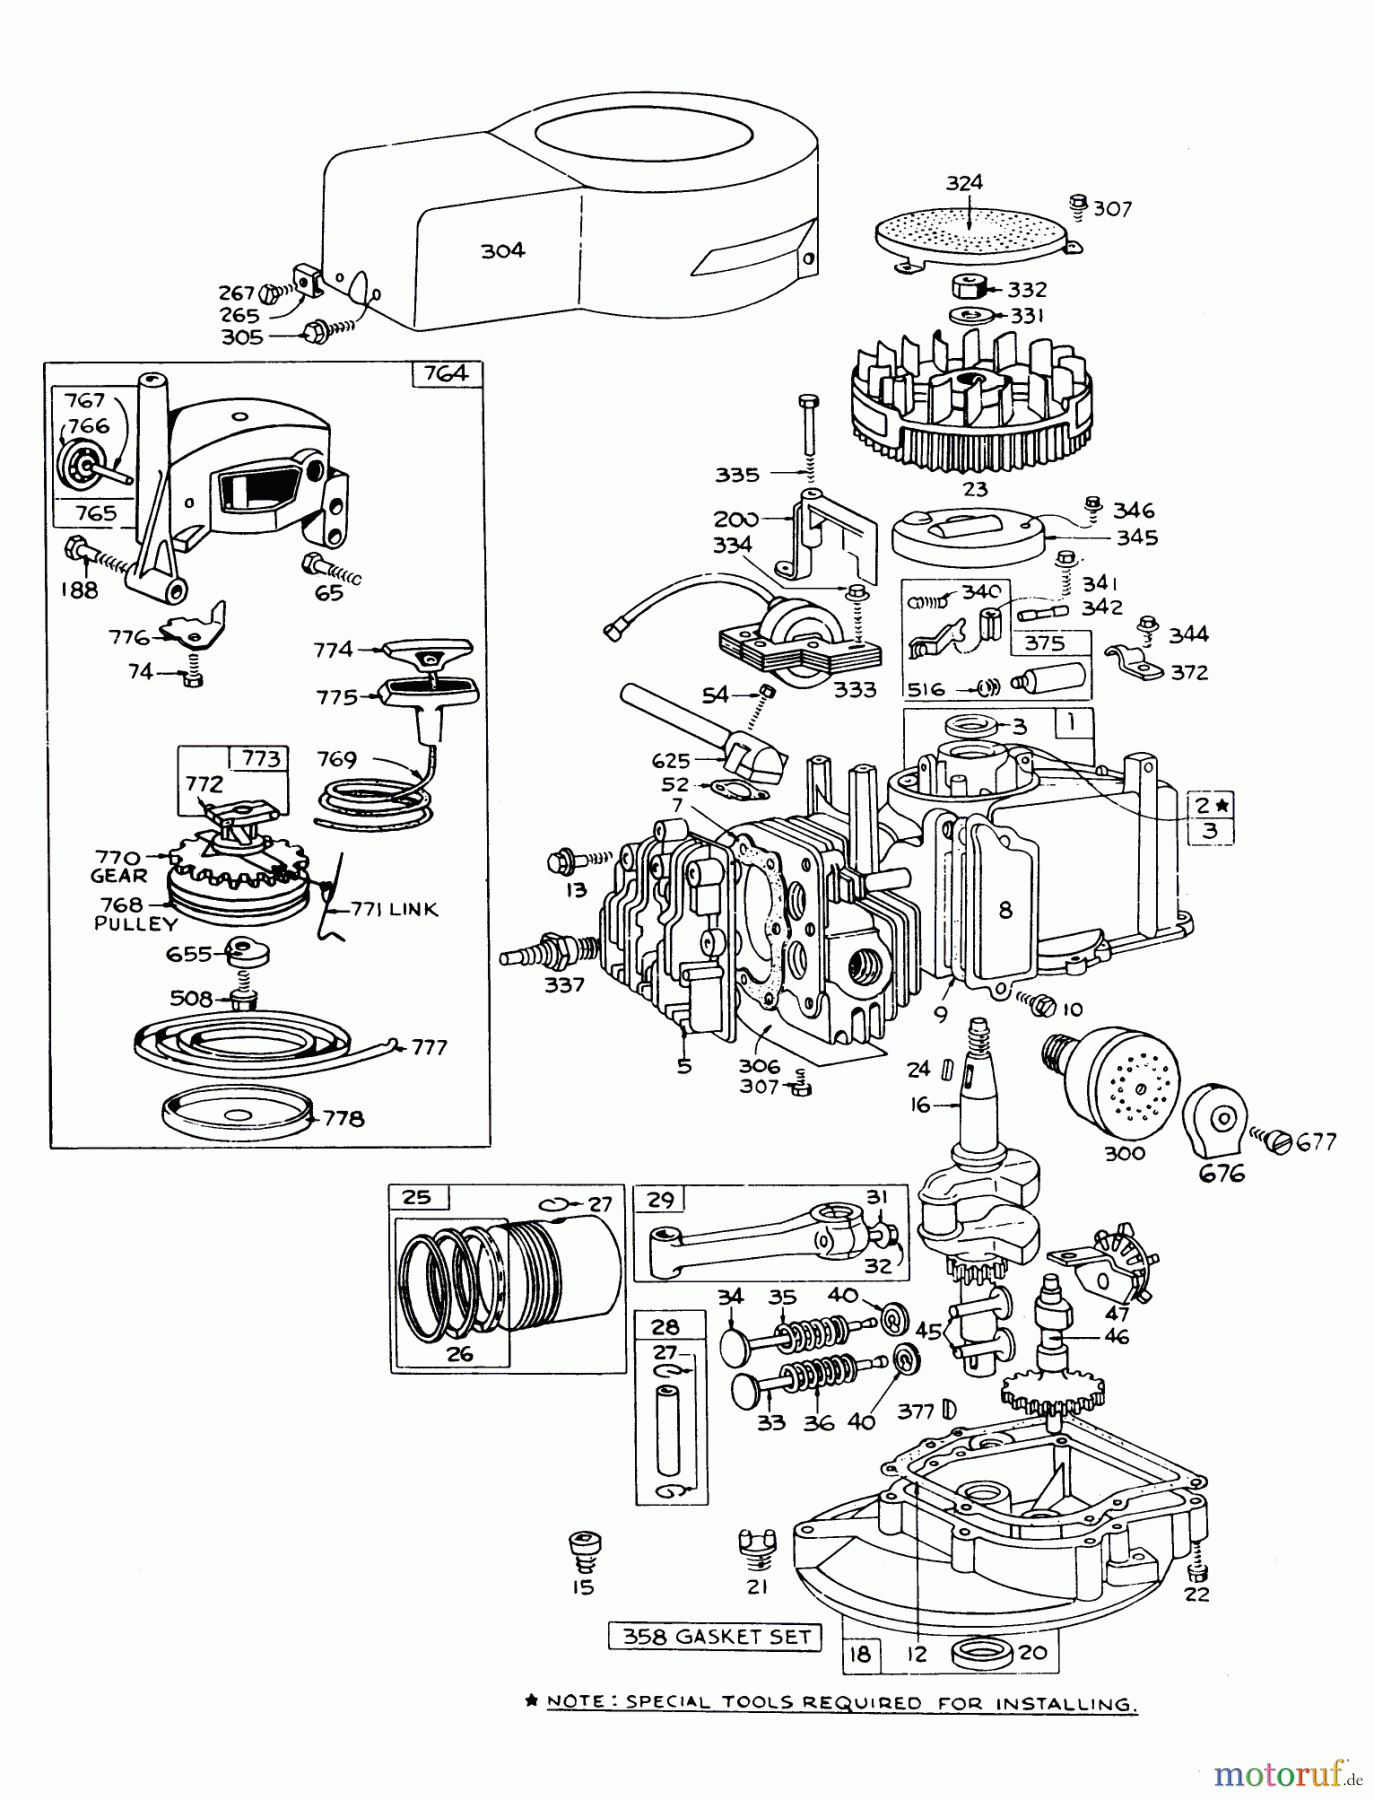  Toro Neu Mowers, Walk-Behind Seite 1 16009 - Toro Whirlwind II Lawnmower, 1977 (7000001-7999999) ENGINE BRIGGS & STRATTON MODEL 92508-0954-01 FOR 19